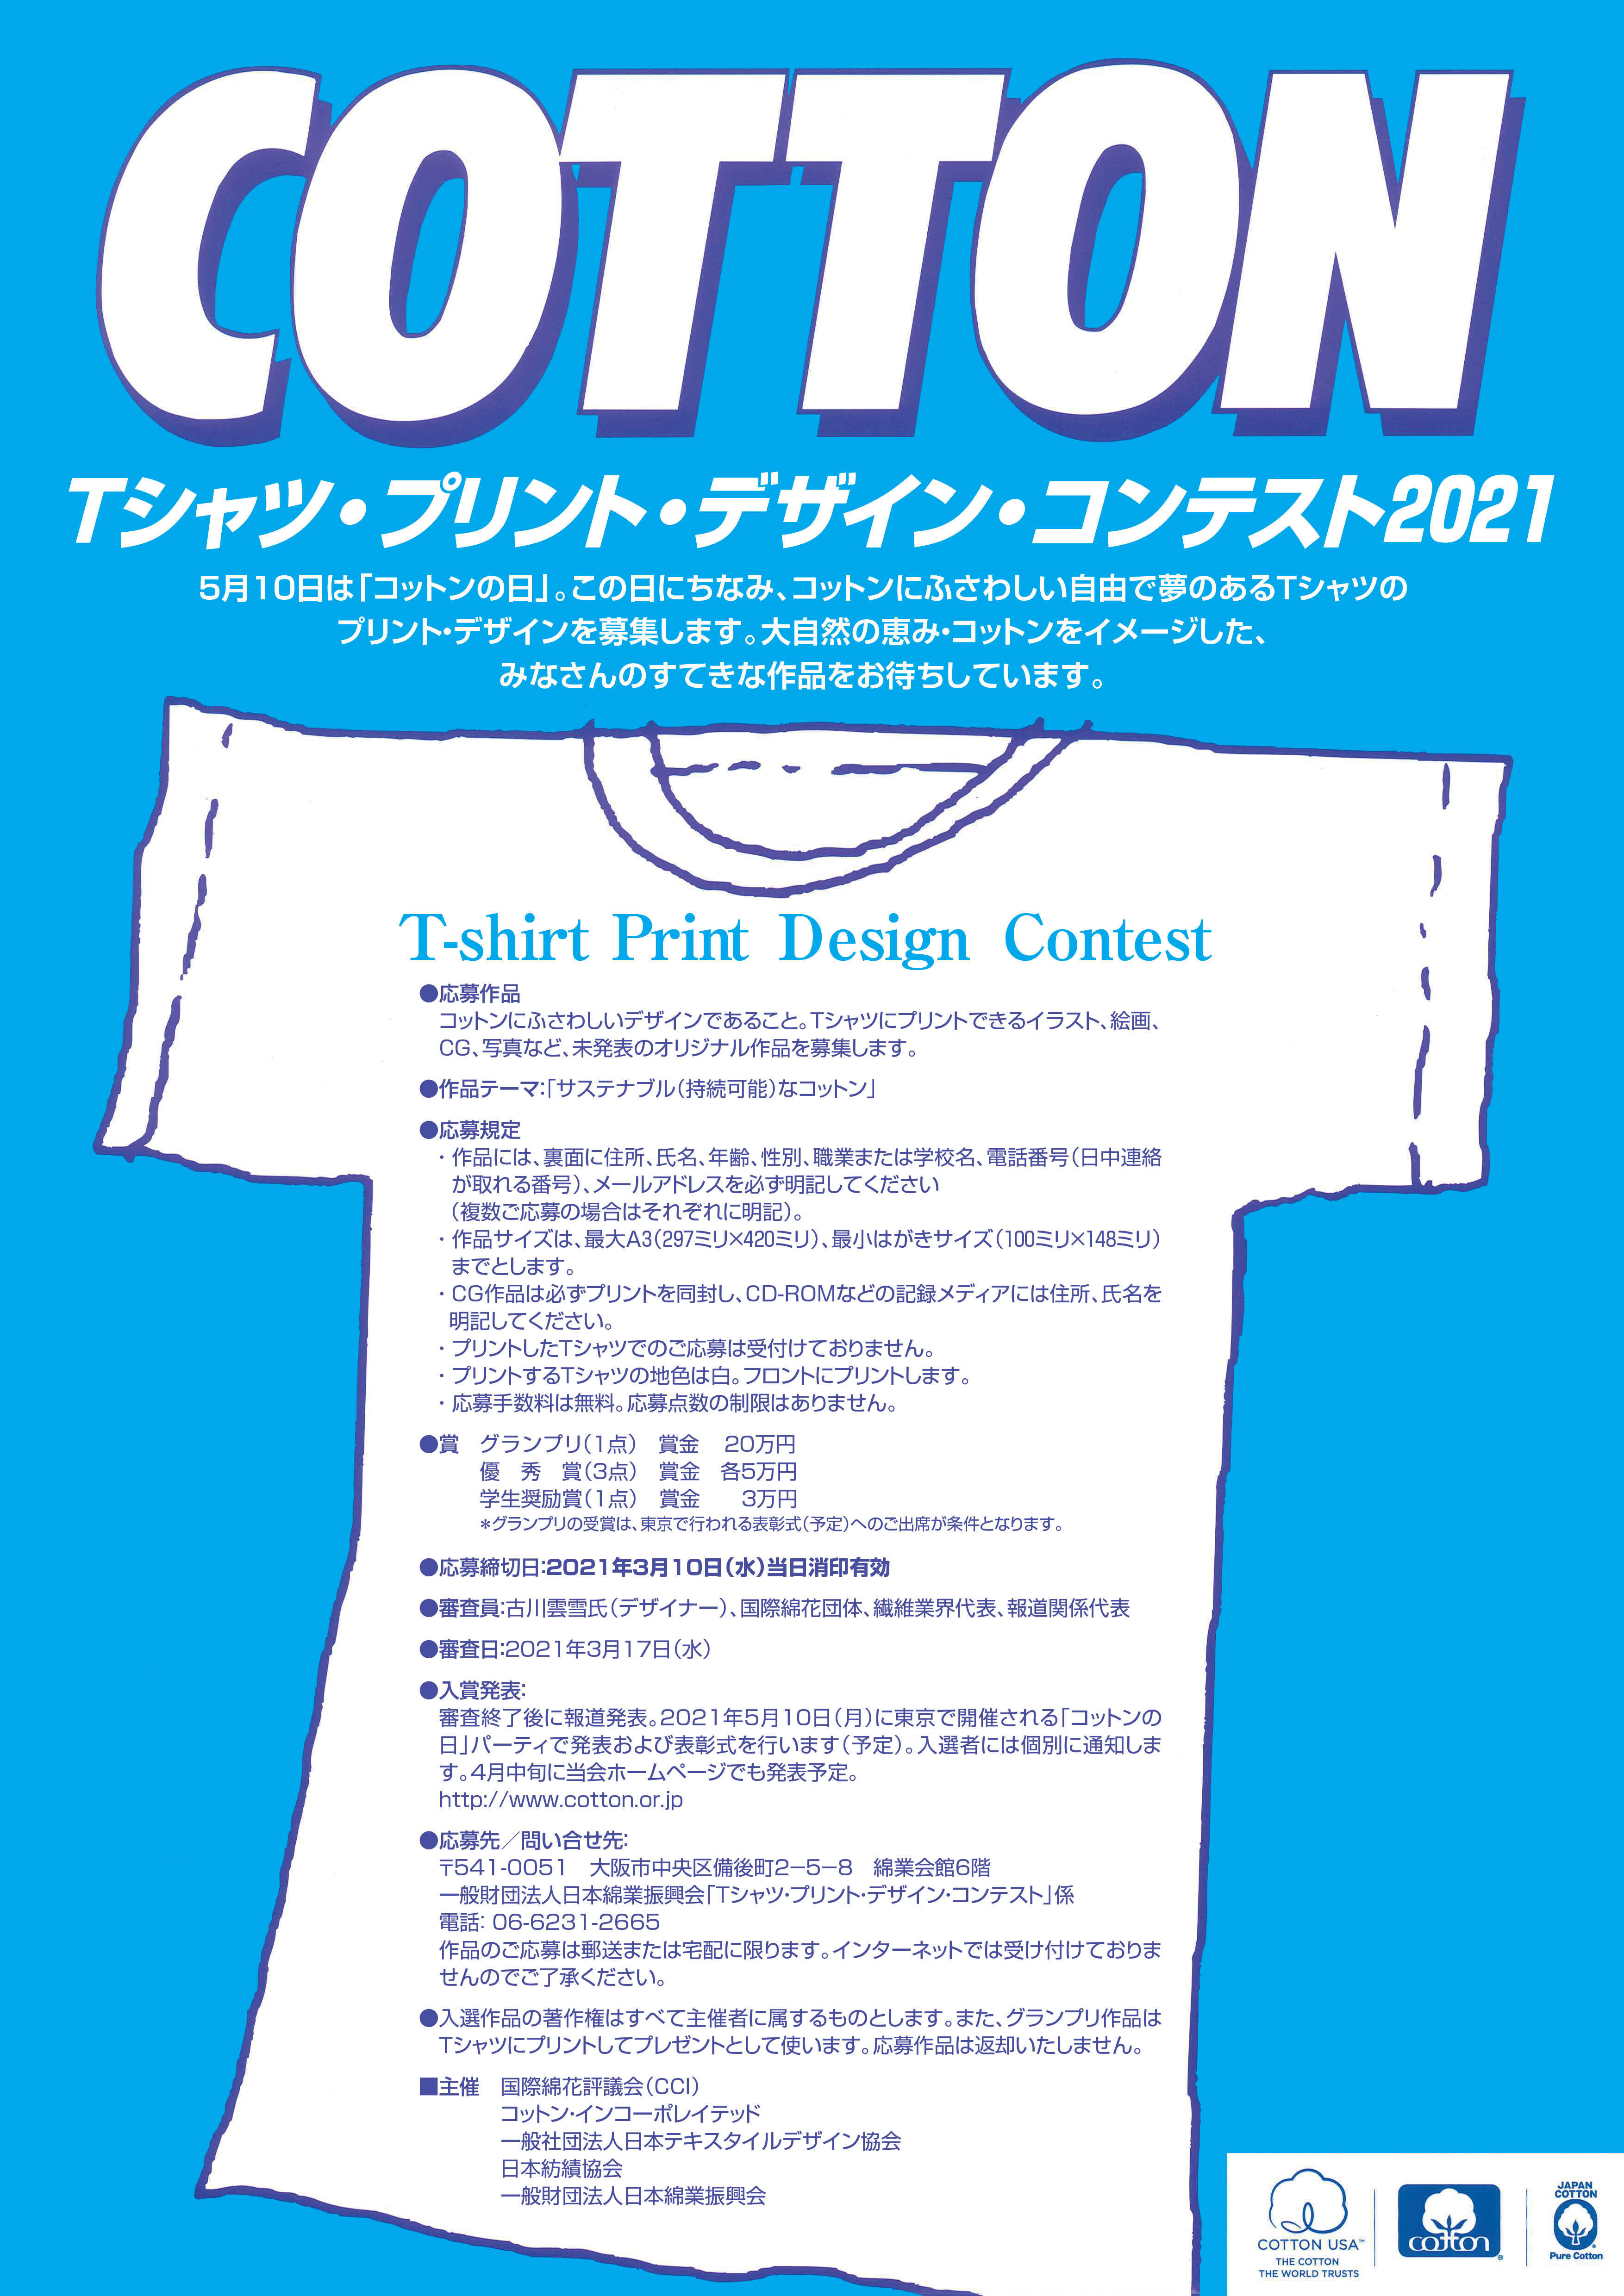 5月10日 コットンの日 特別企画 Tシャツ プリント デザイン コンテスト21 開催 サステナブル 持続可能 なコットン をテーマにした作品を募集 一般財団法人日本綿業振興会のプレスリリース